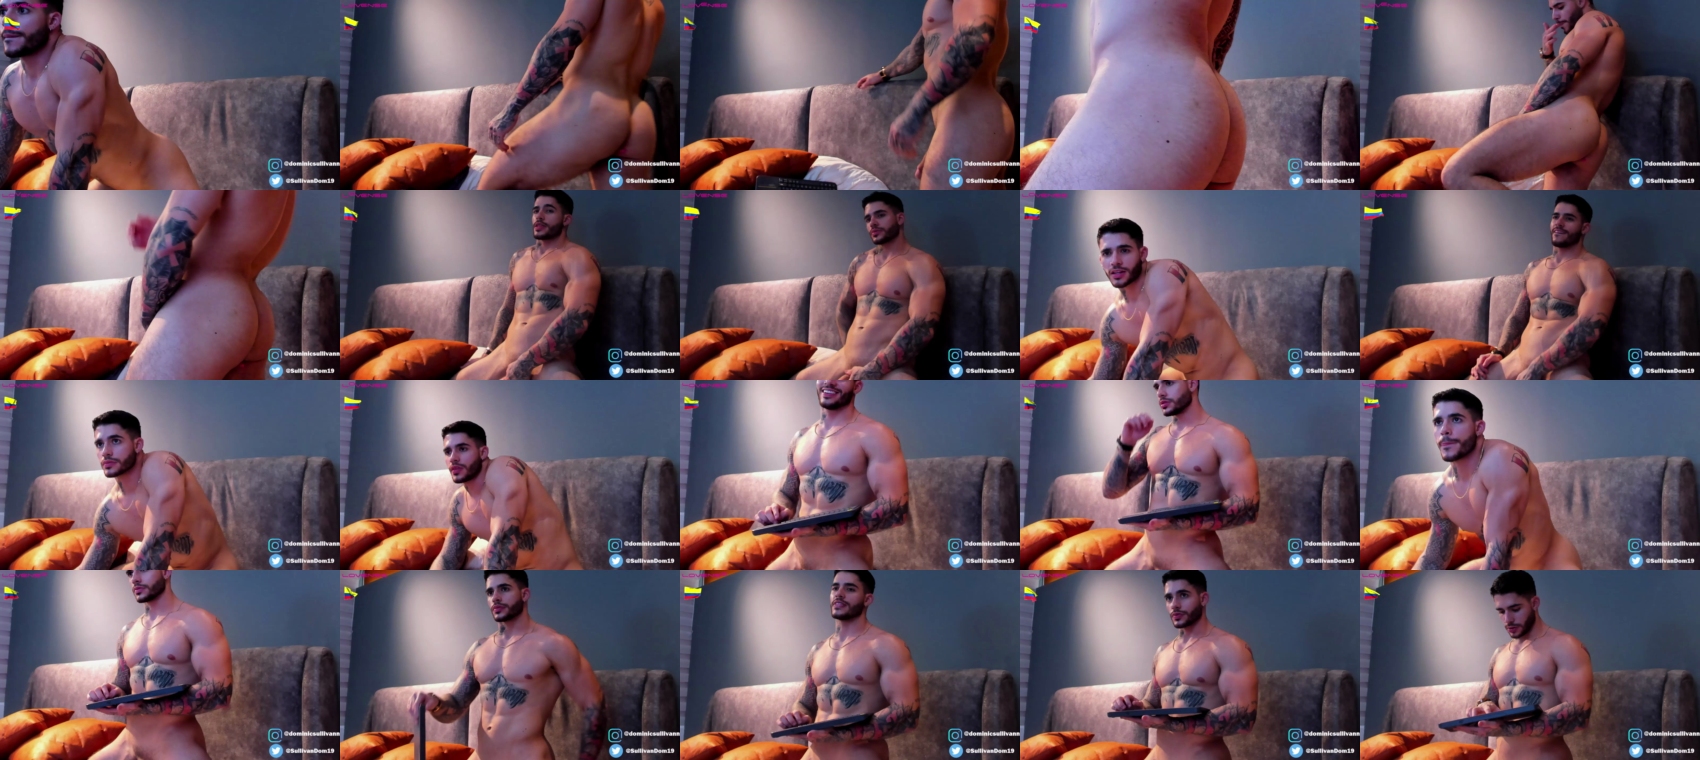 dominic_sullivan1  11-02-2022 Males Nude